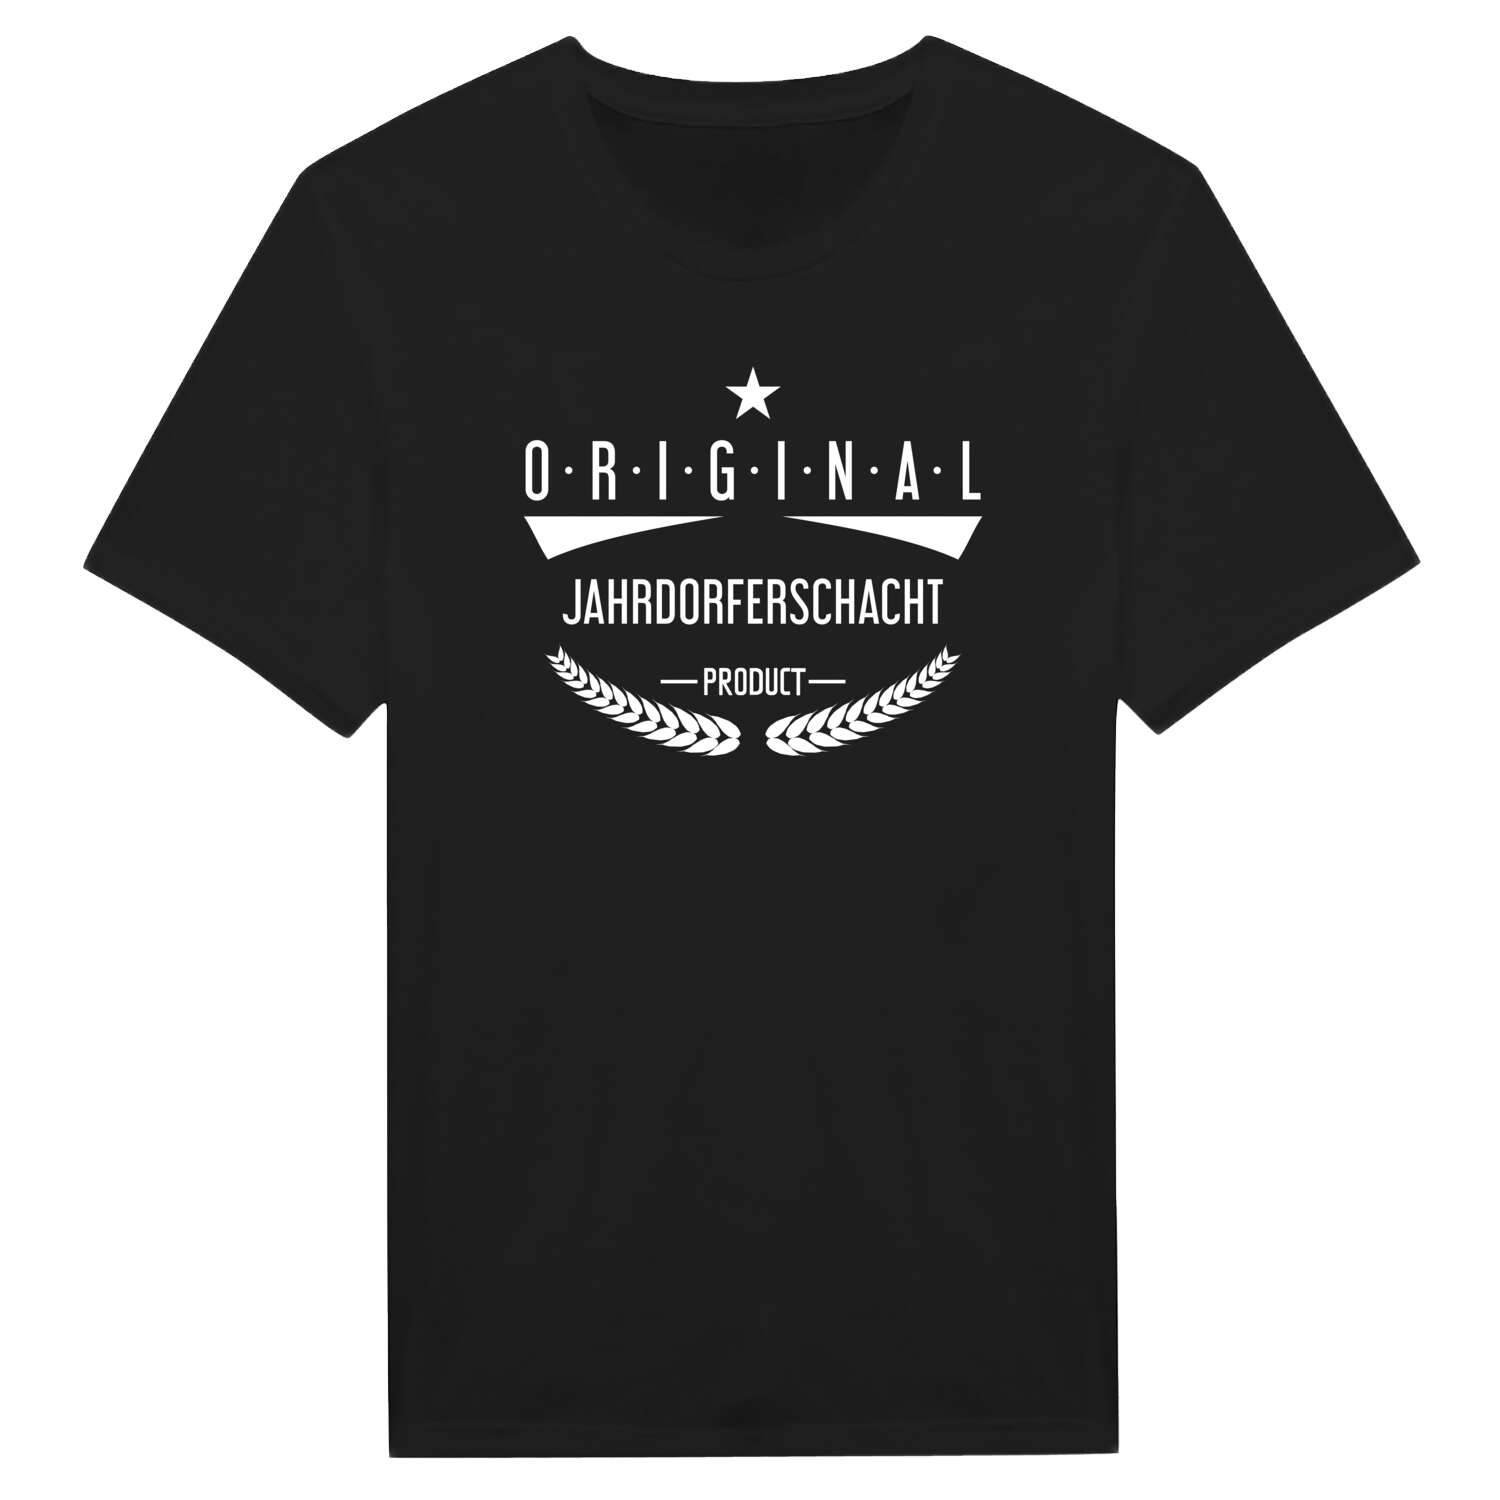 Jahrdorferschacht T-Shirt »Original Product«